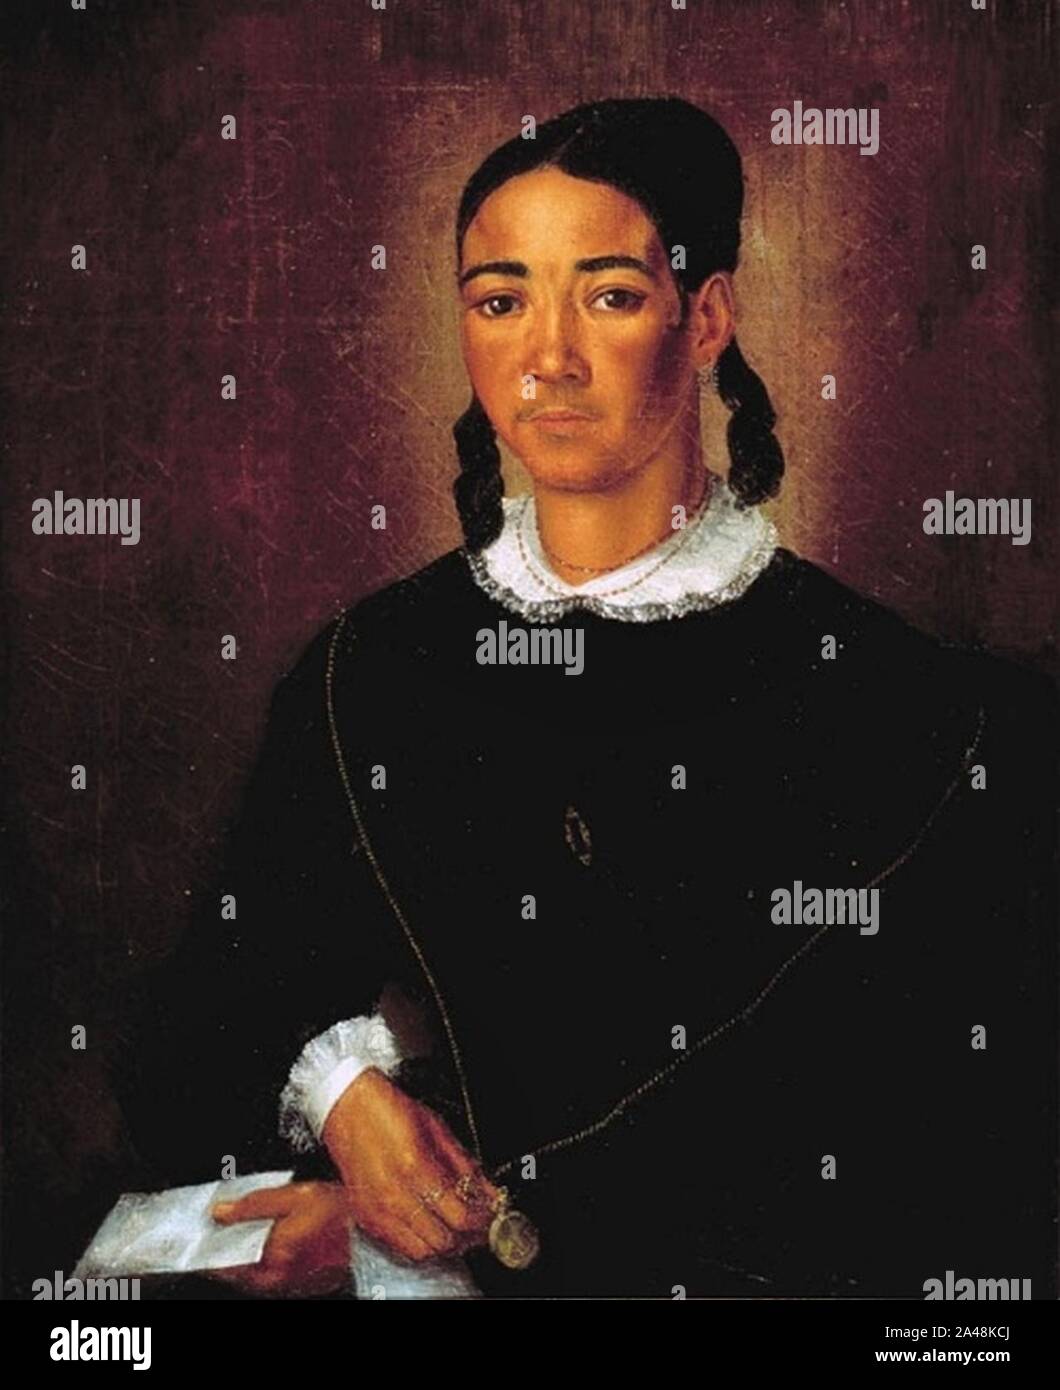 Fleischbein Portrait einer farbigen Frau 1840. Stock Photo